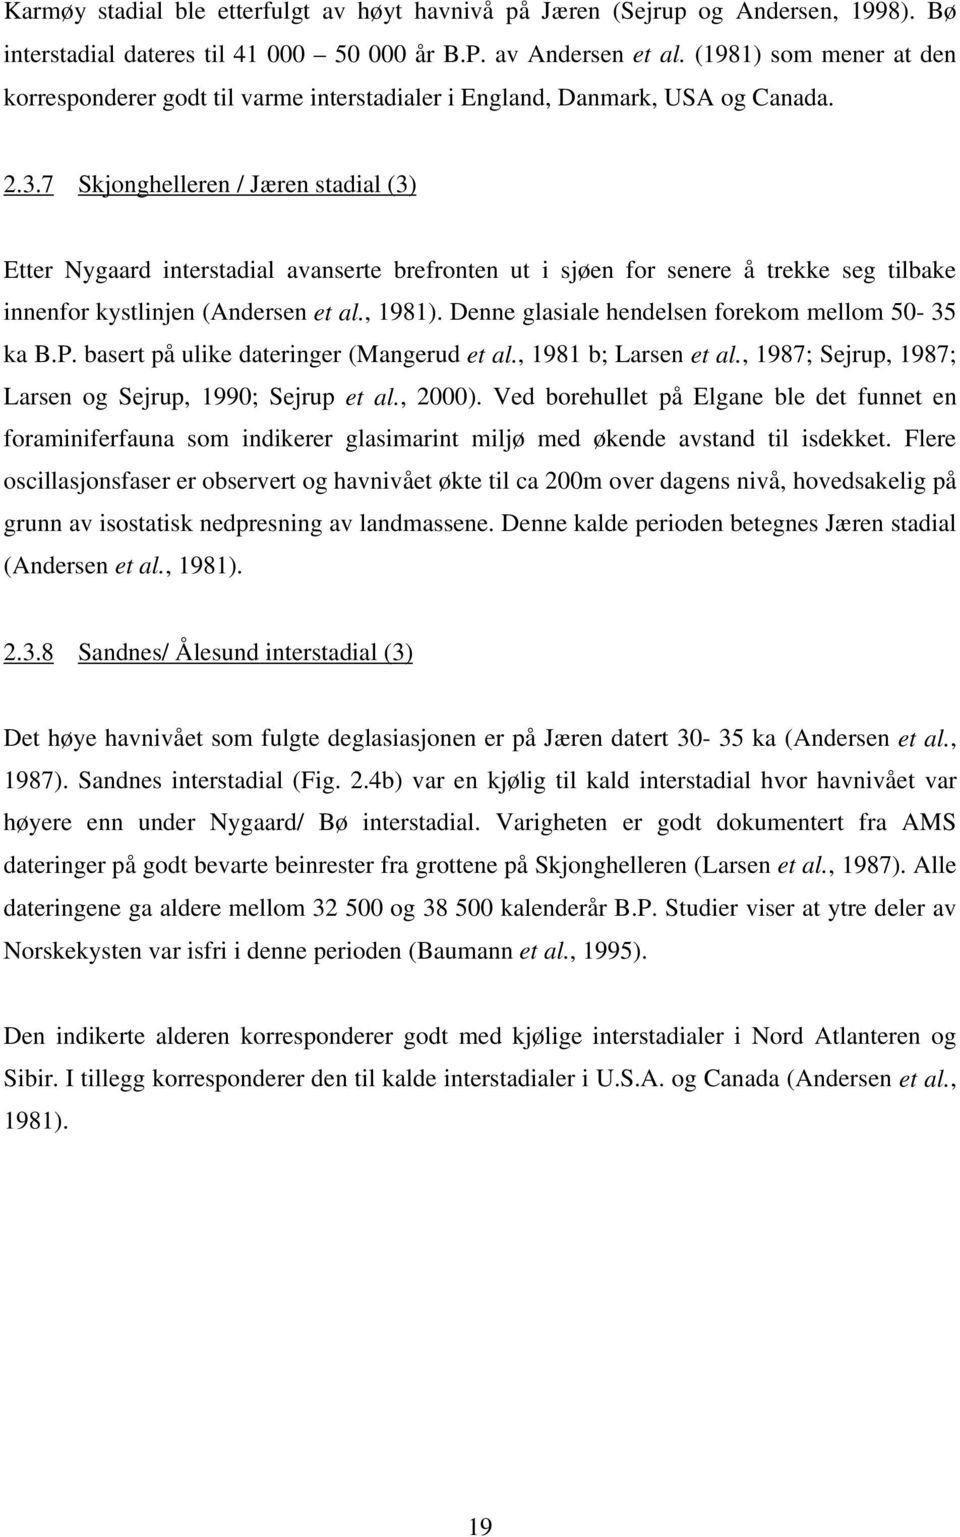 7 Skjonghelleren / Jæren stadial (3) Etter Nygaard interstadial avanserte brefronten ut i sjøen for senere å trekke seg tilbake innenfor kystlinjen (Andersen et al., 1981).